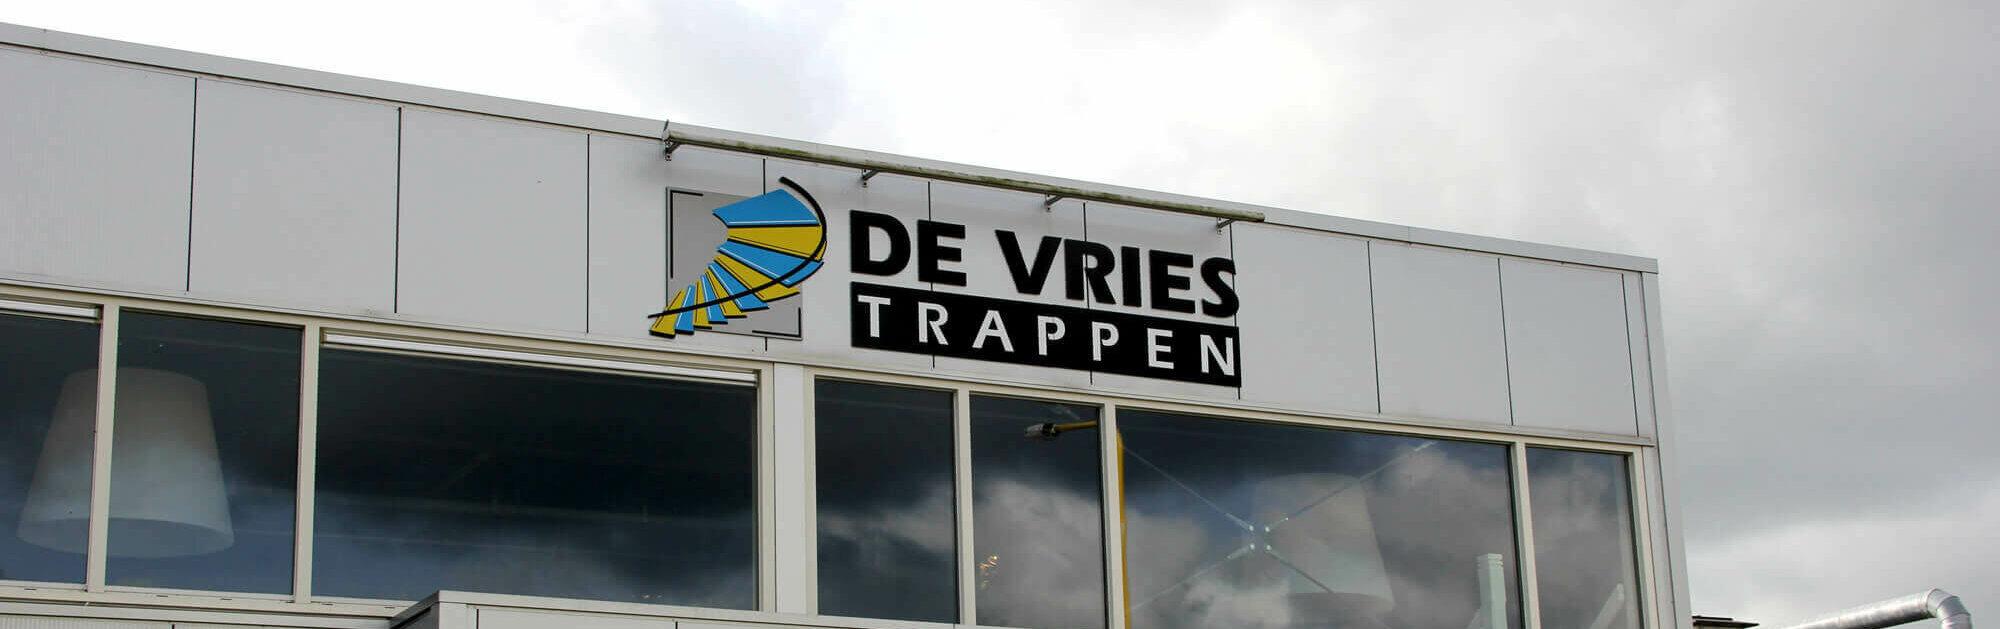 De Vries Trappen Gebäudenansicht